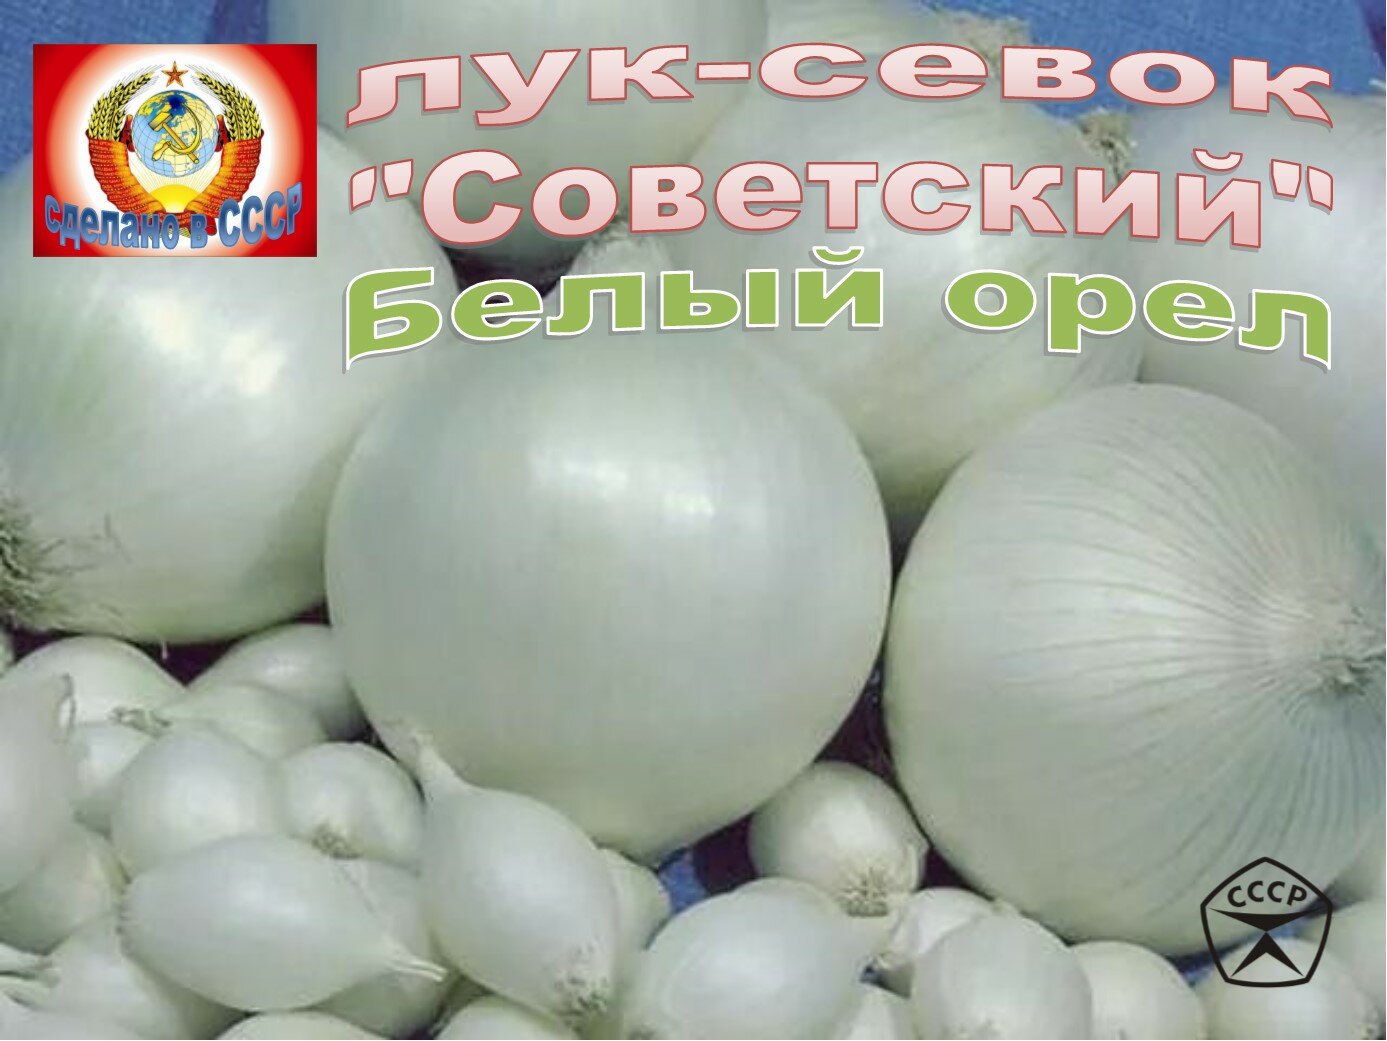 Лук-севок Белый орел "Советский", 1-я категория, 500 грамм